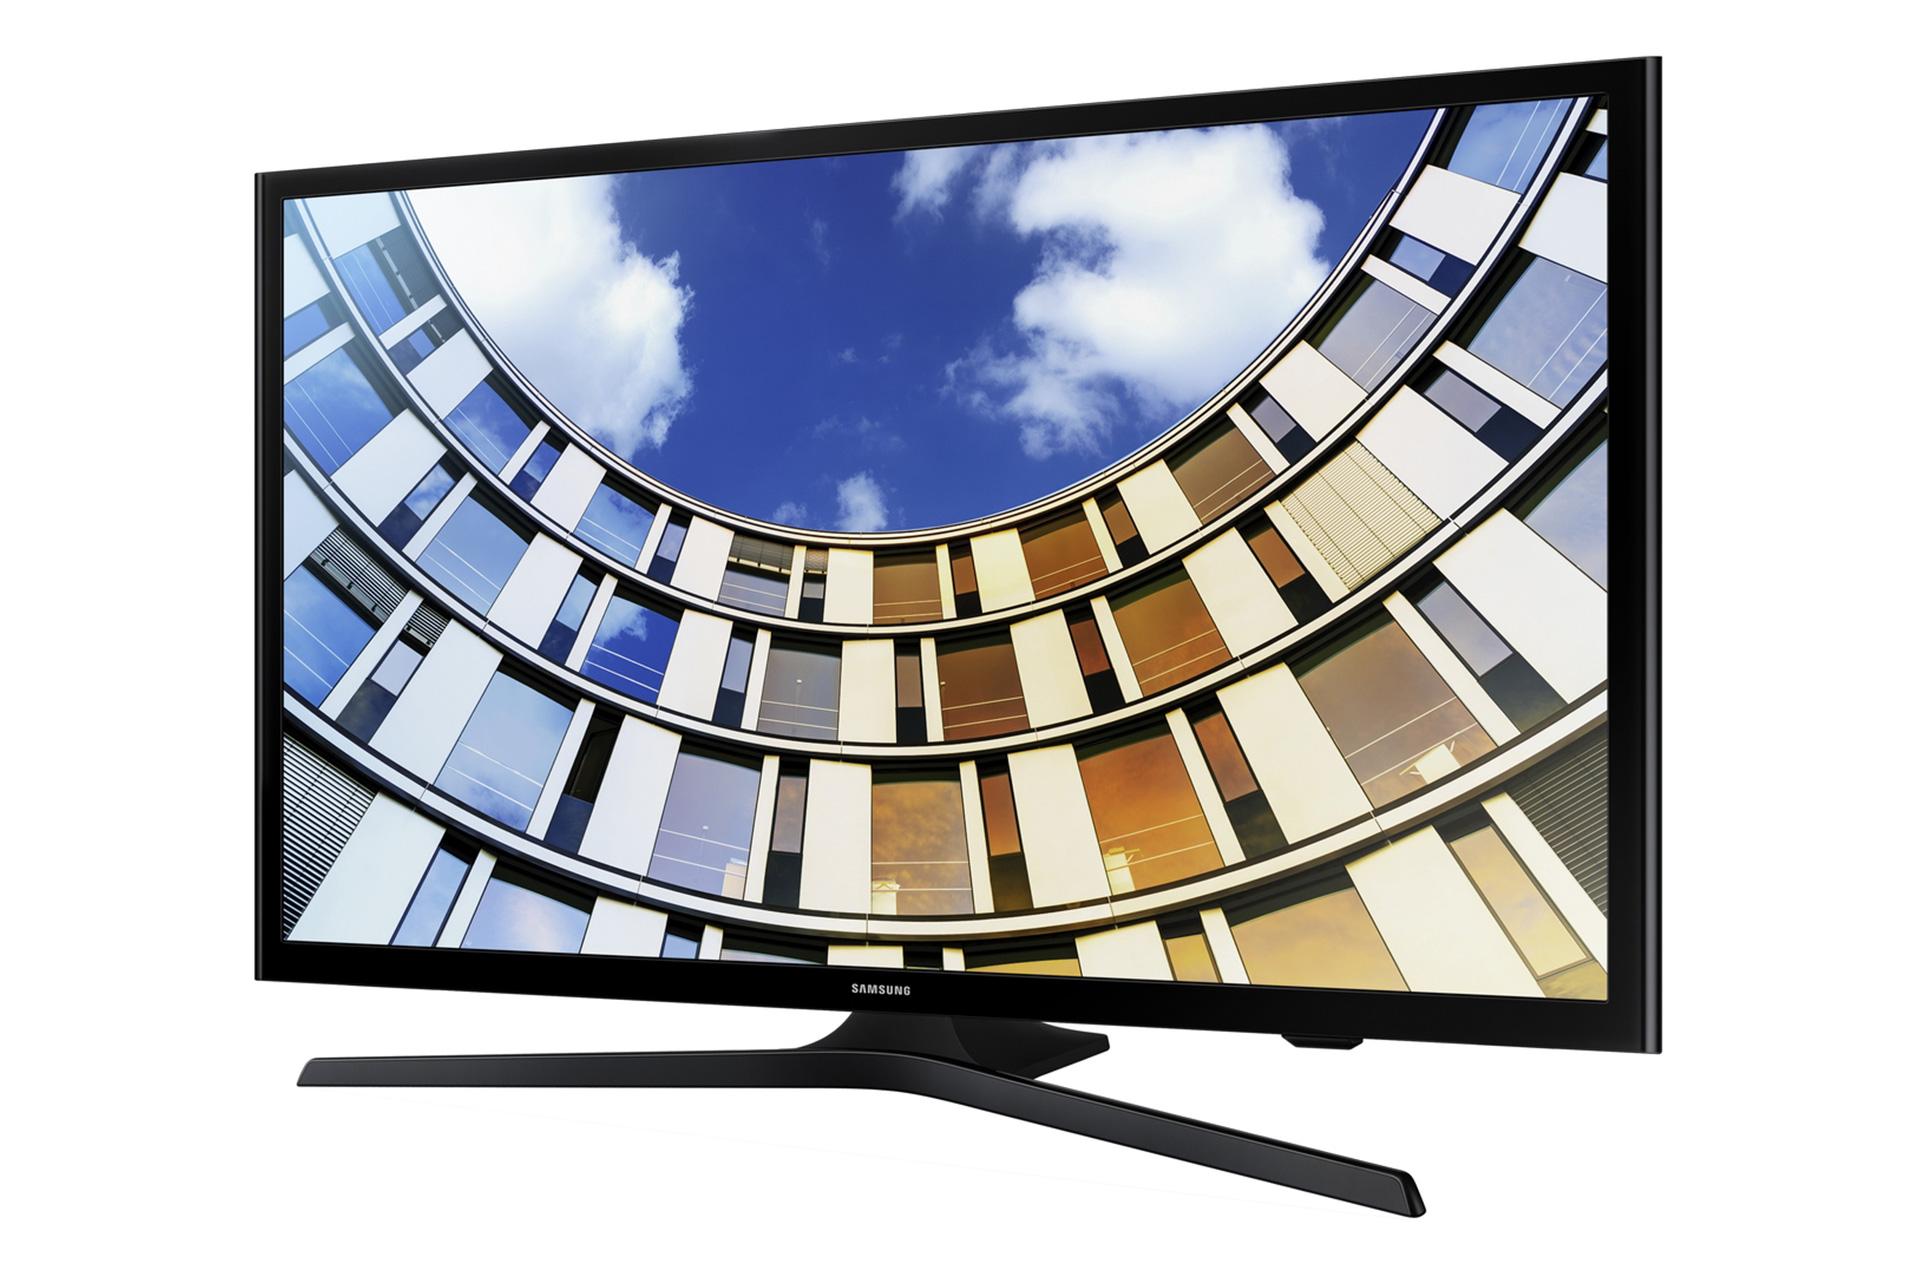 نمای نیمرخ تلویزیون سامسونگ M5300 مدل 49 اینچ با پایه مرکزی